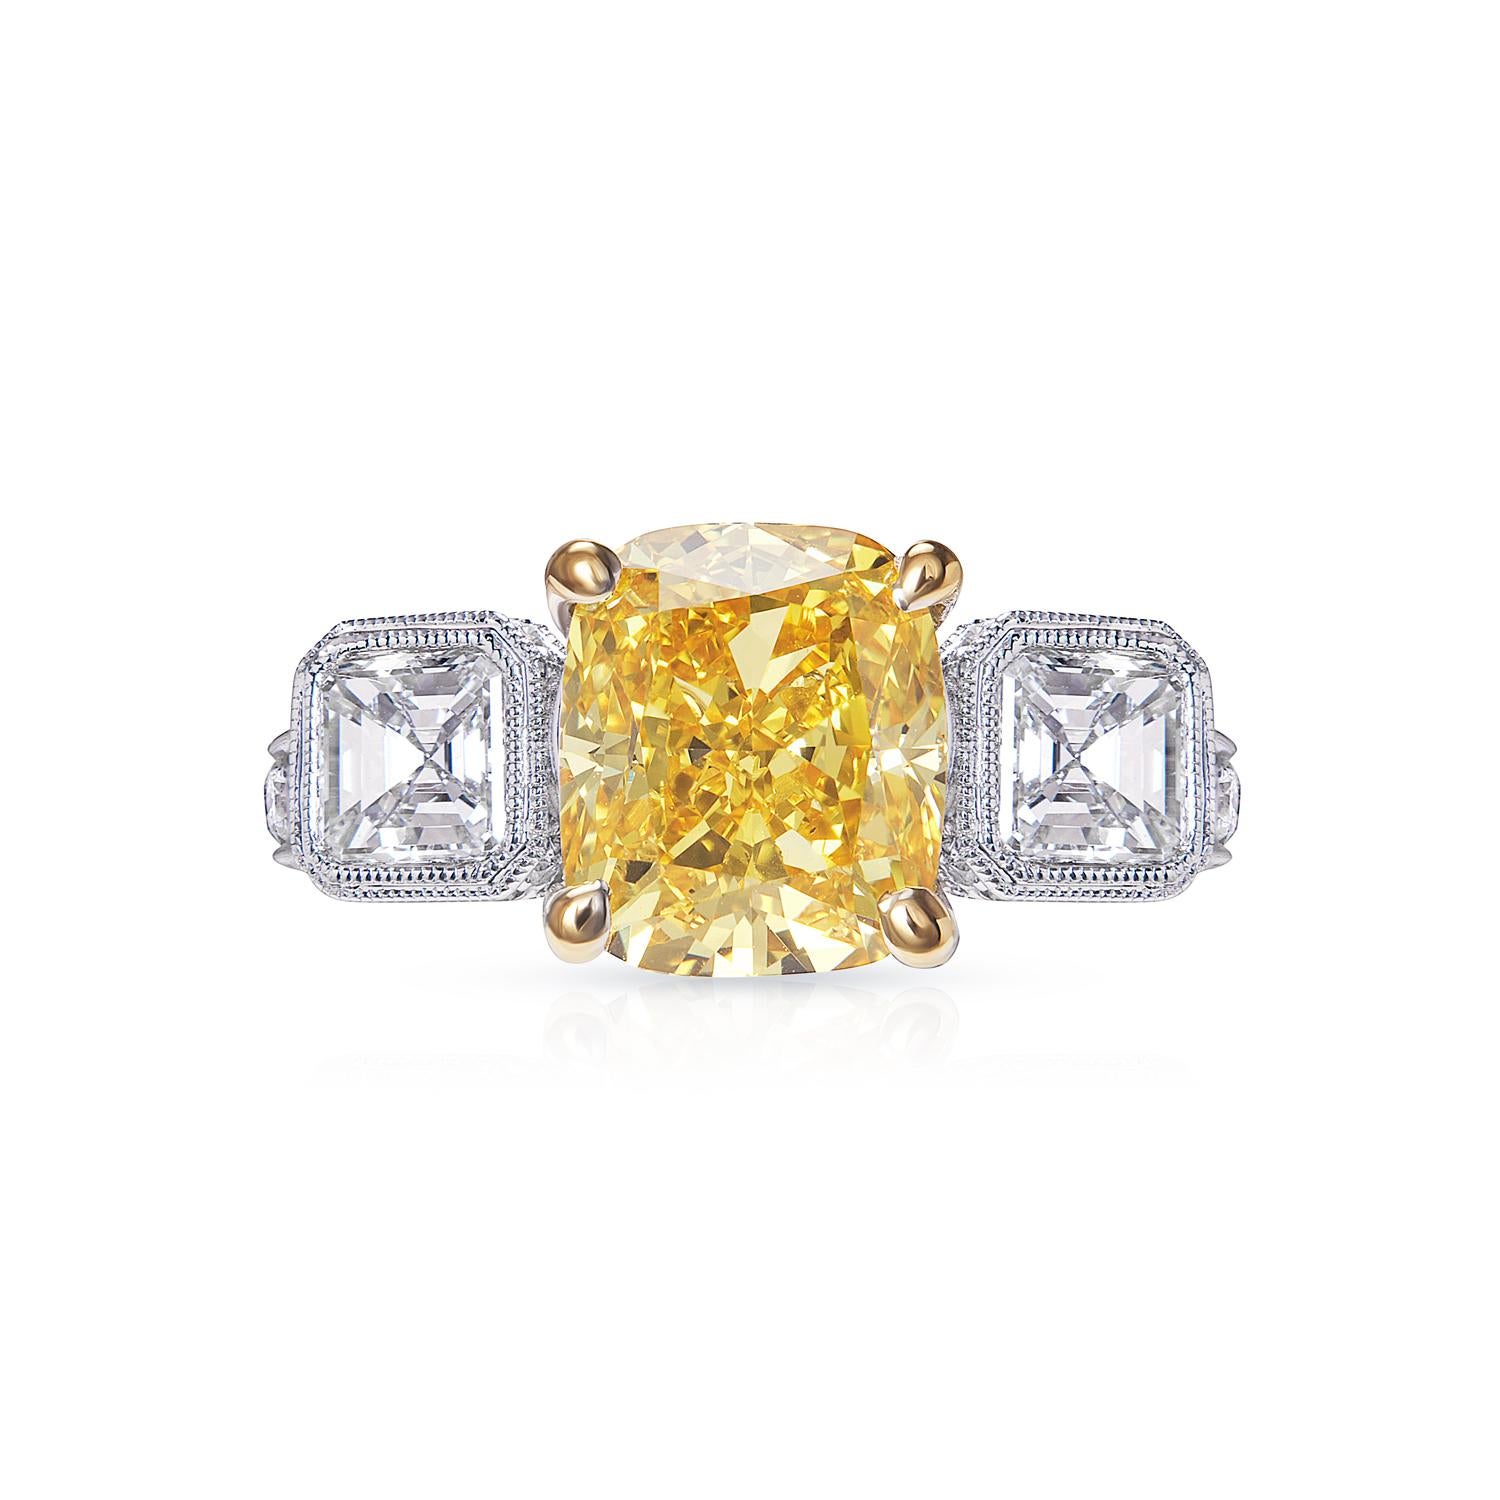 Dieser exquisite Diamantring mit Kissenschliff ist die perfekte Möglichkeit, Ihrem Look einen Hauch von Luxus zu verleihen. Der wunderschöne Diamant im Kissenschliff ist das Herzstück dieses atemberaubenden Rings, flankiert von zwei kleineren